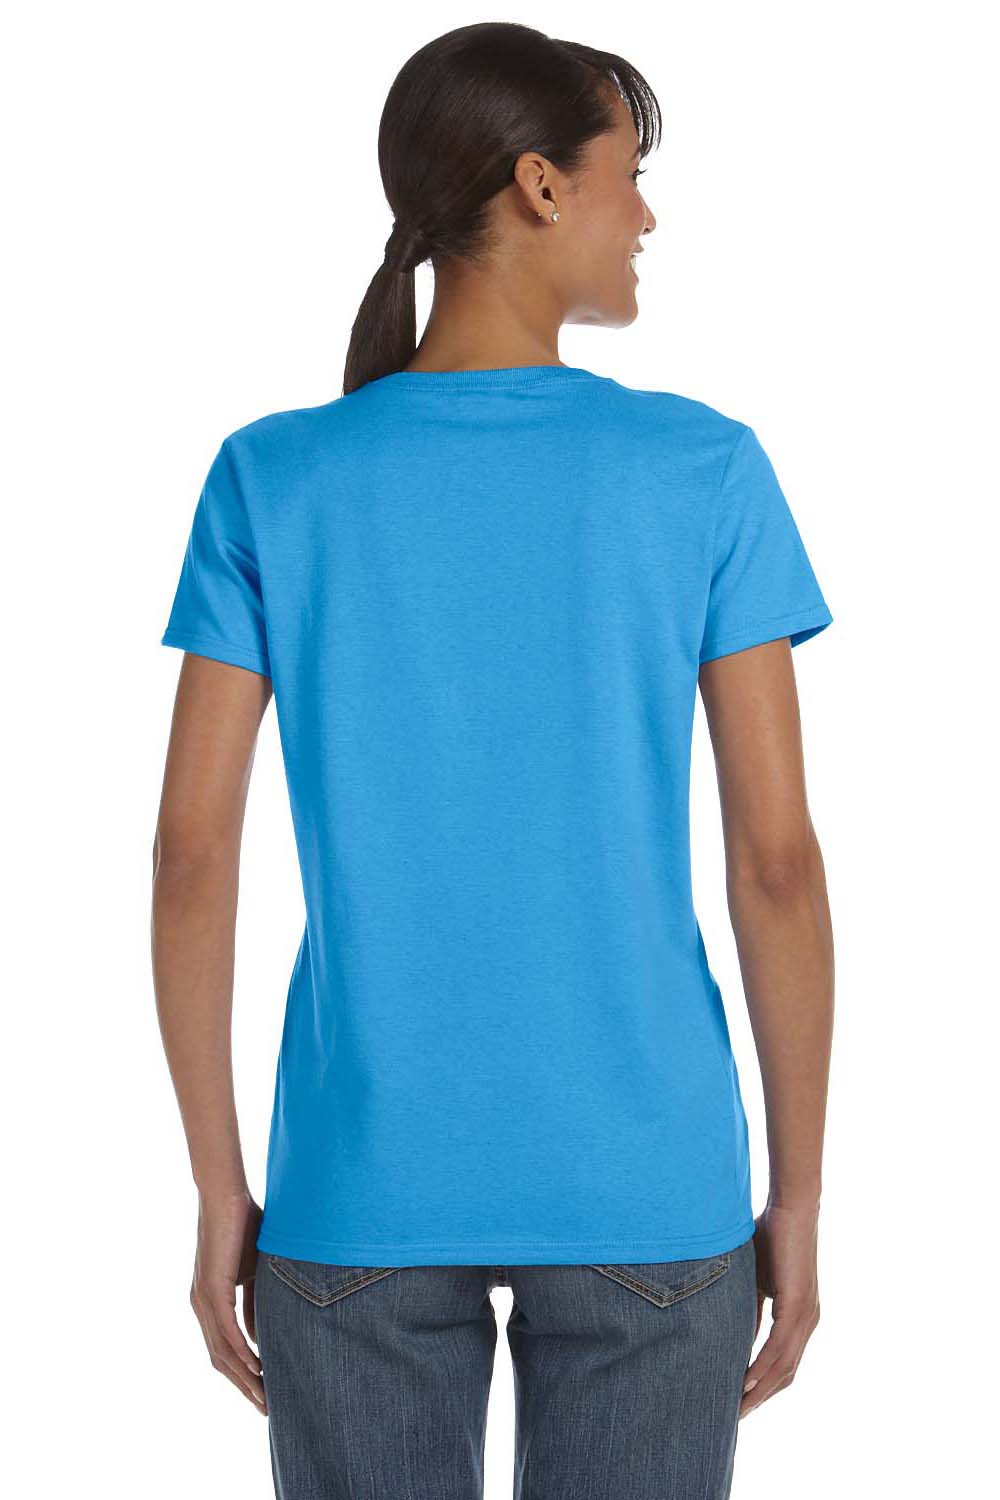 Gildan G500L Womens Short Sleeve Crewneck T-Shirt Heather Sapphire Blue Back